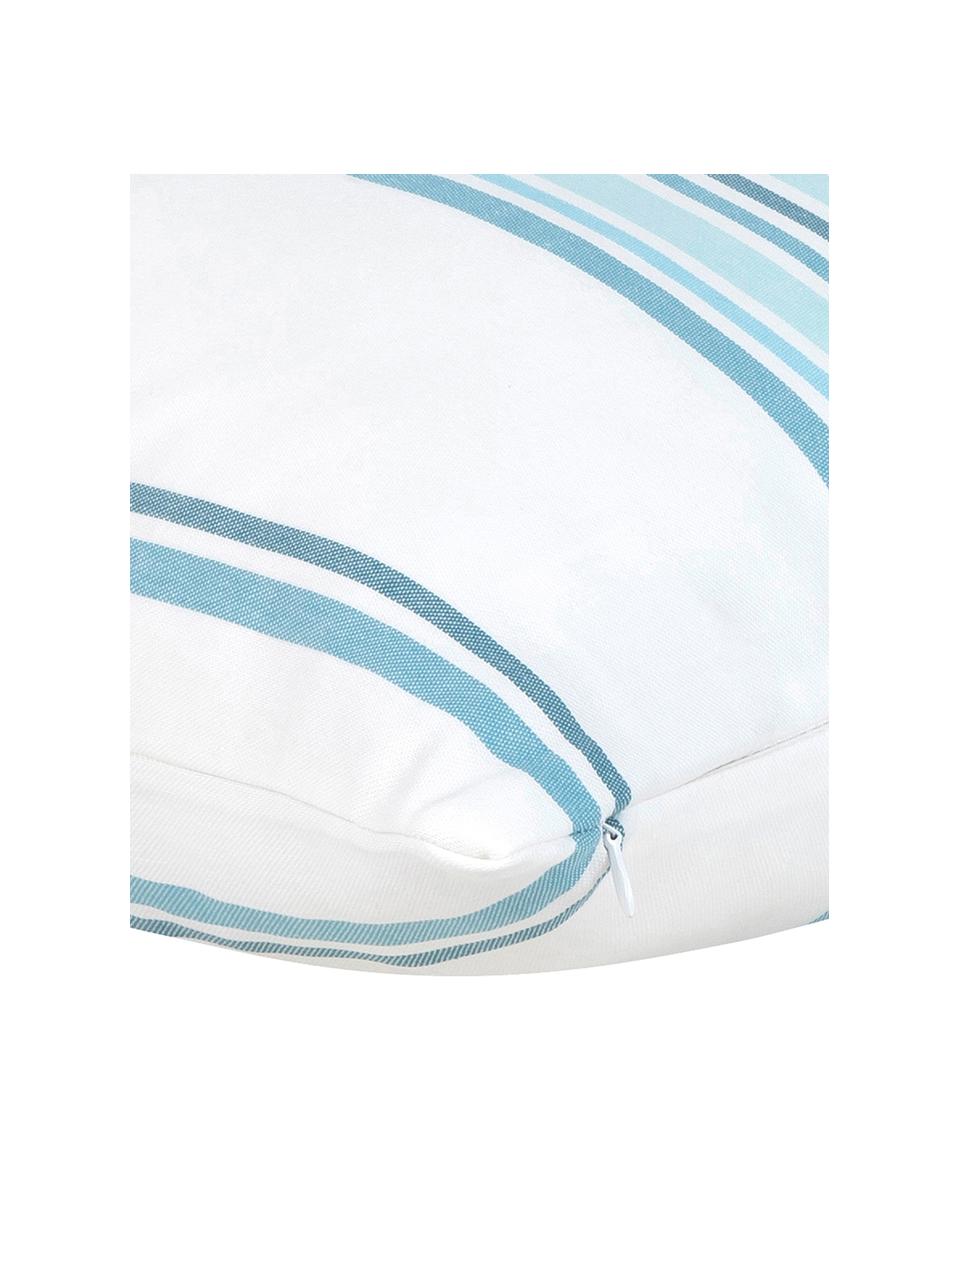 Poszewka na poduszkę Lin, 100% bawełna, Kremowobiały, niebieski, S 50 x D 50 cm